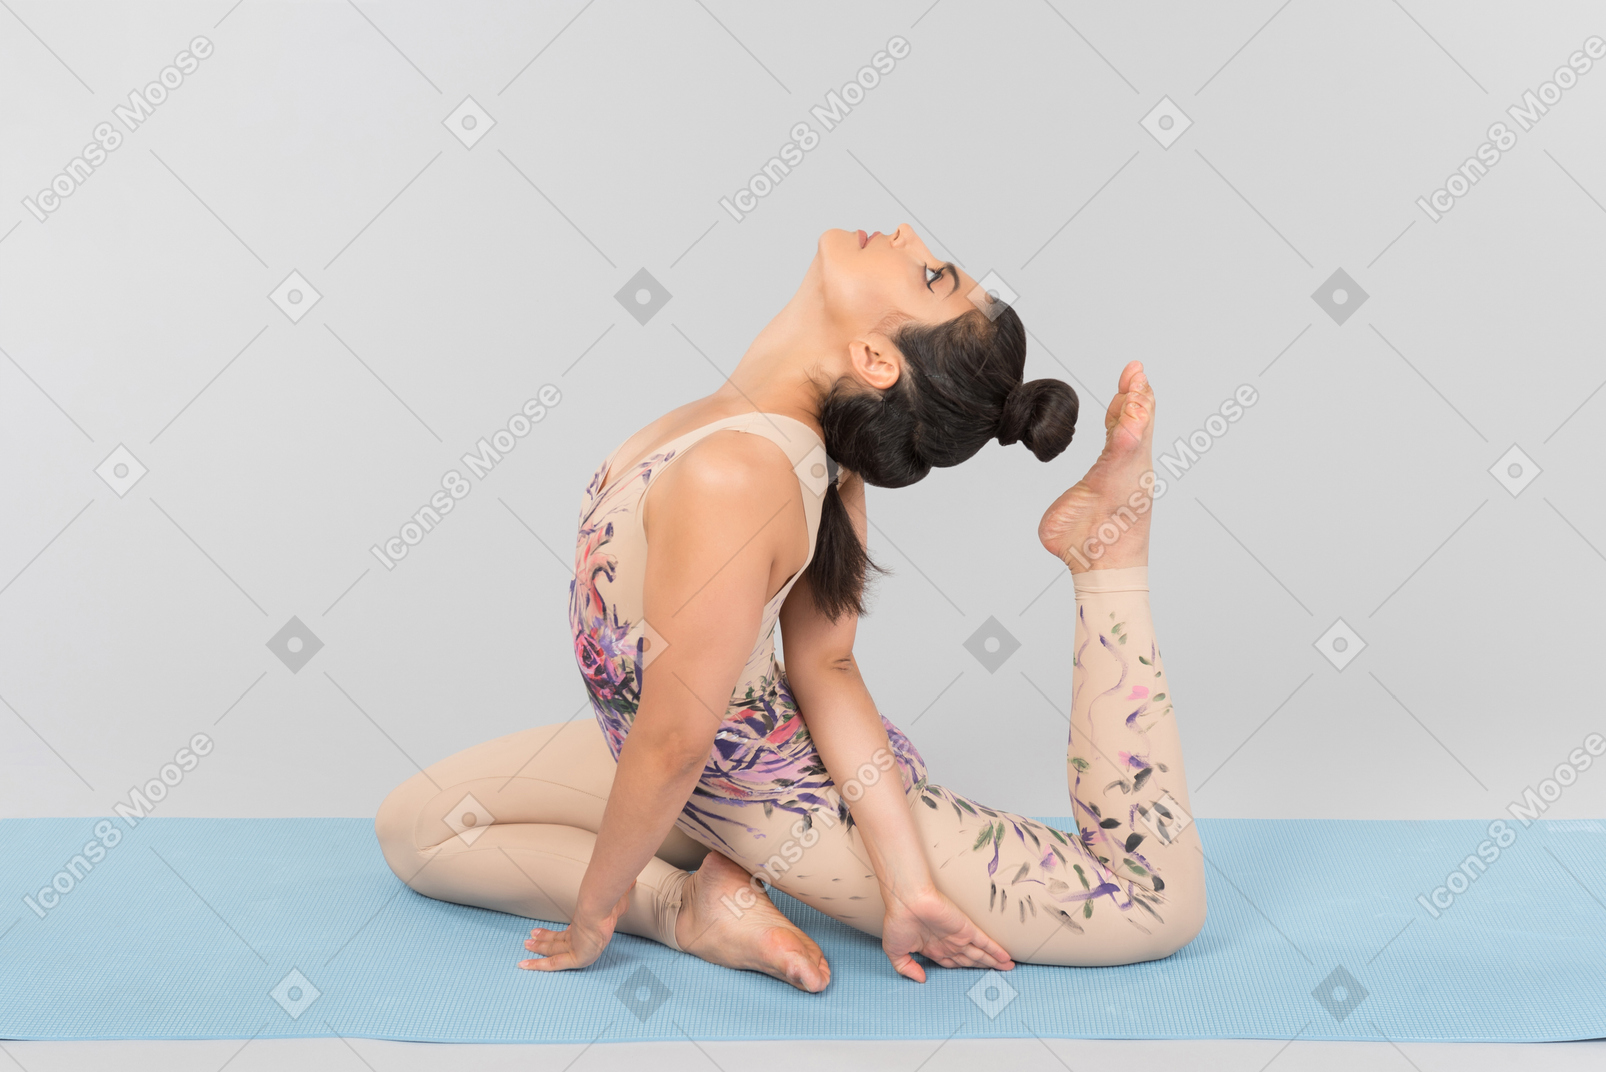 Jeune gymnaste indienne se trouvant sur un tapis de yoga et se touchant presque la tête avec un orteil